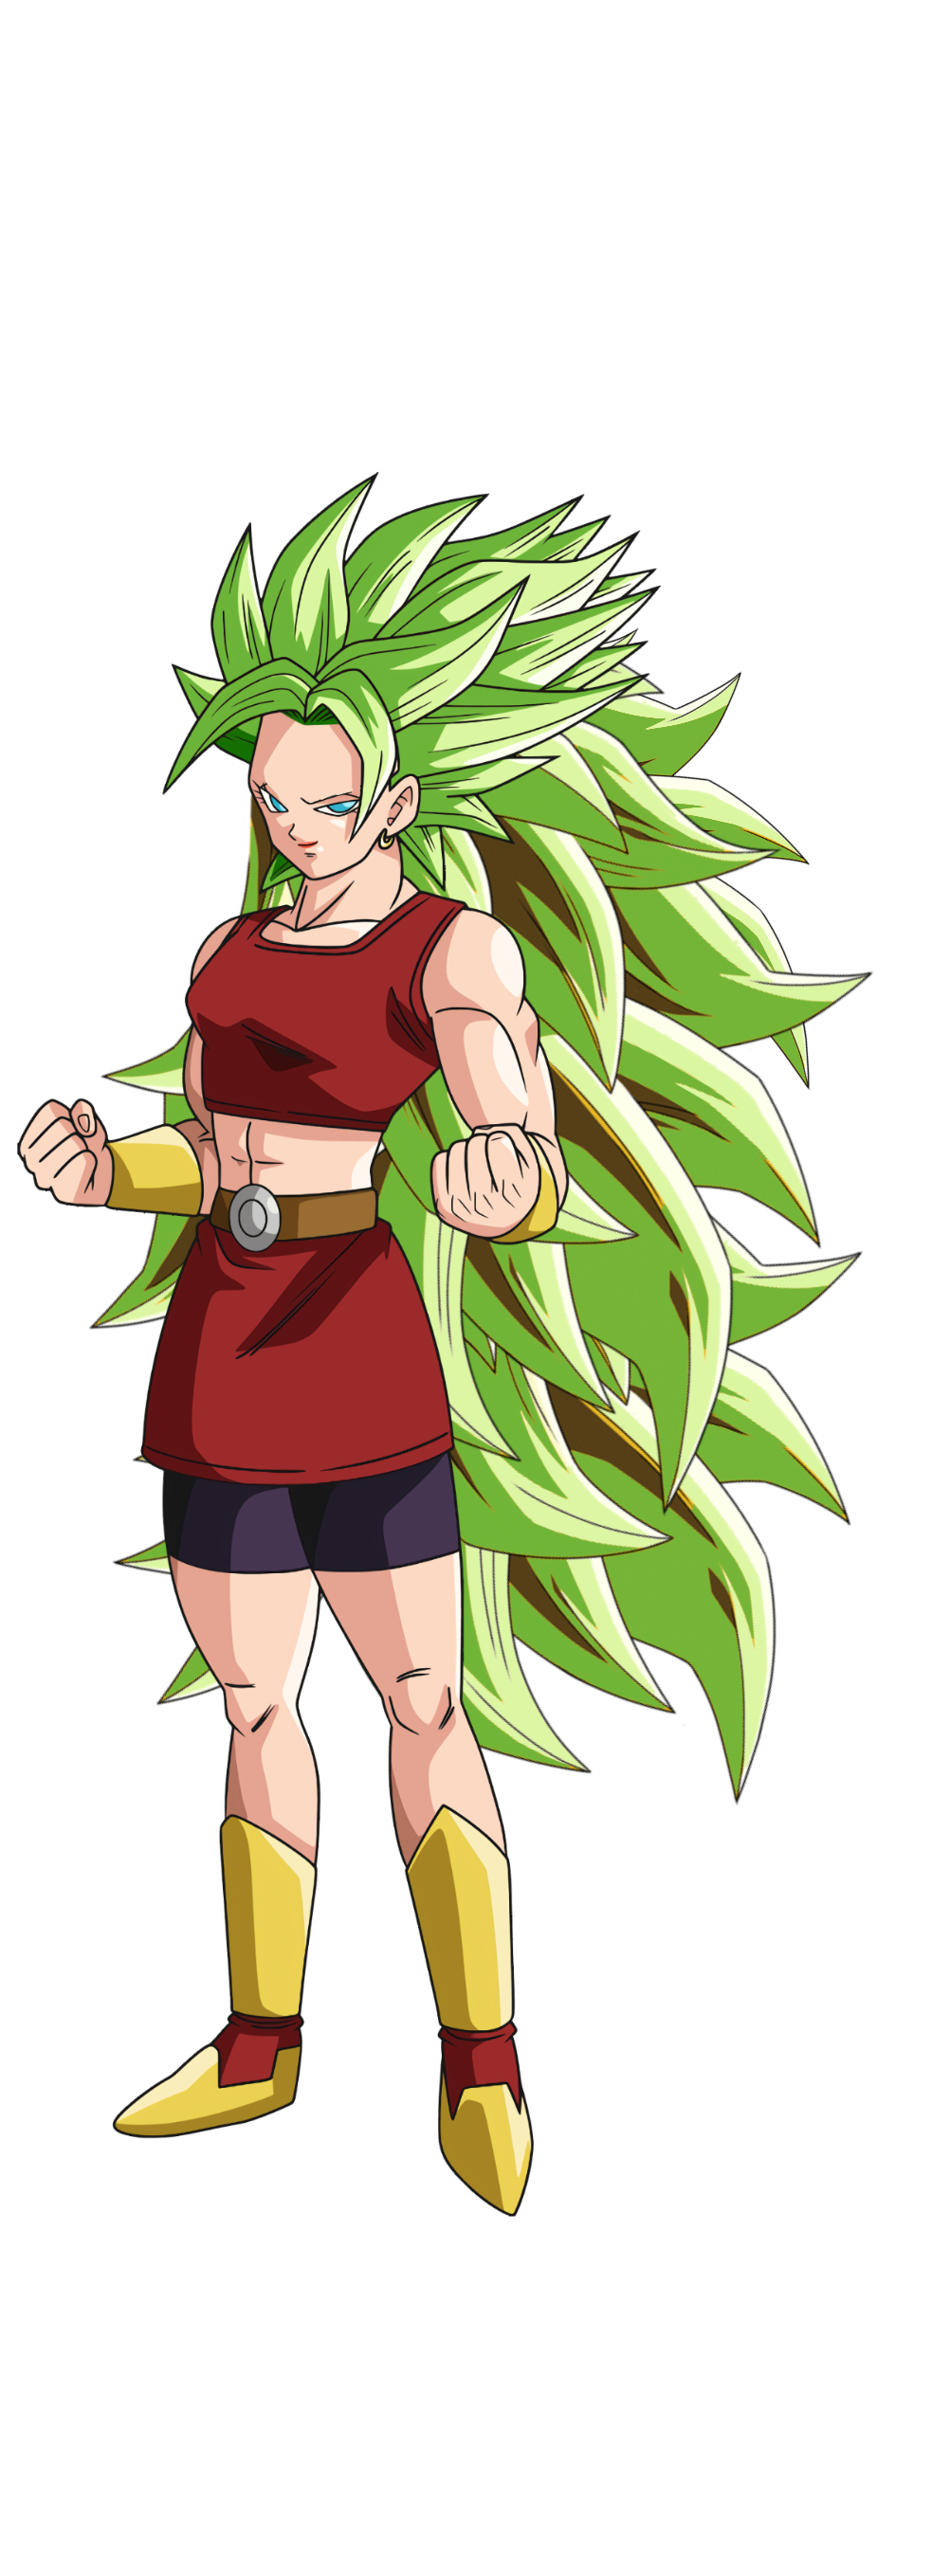 Goku Super Saiyan 3 by crismarshall on DeviantArt